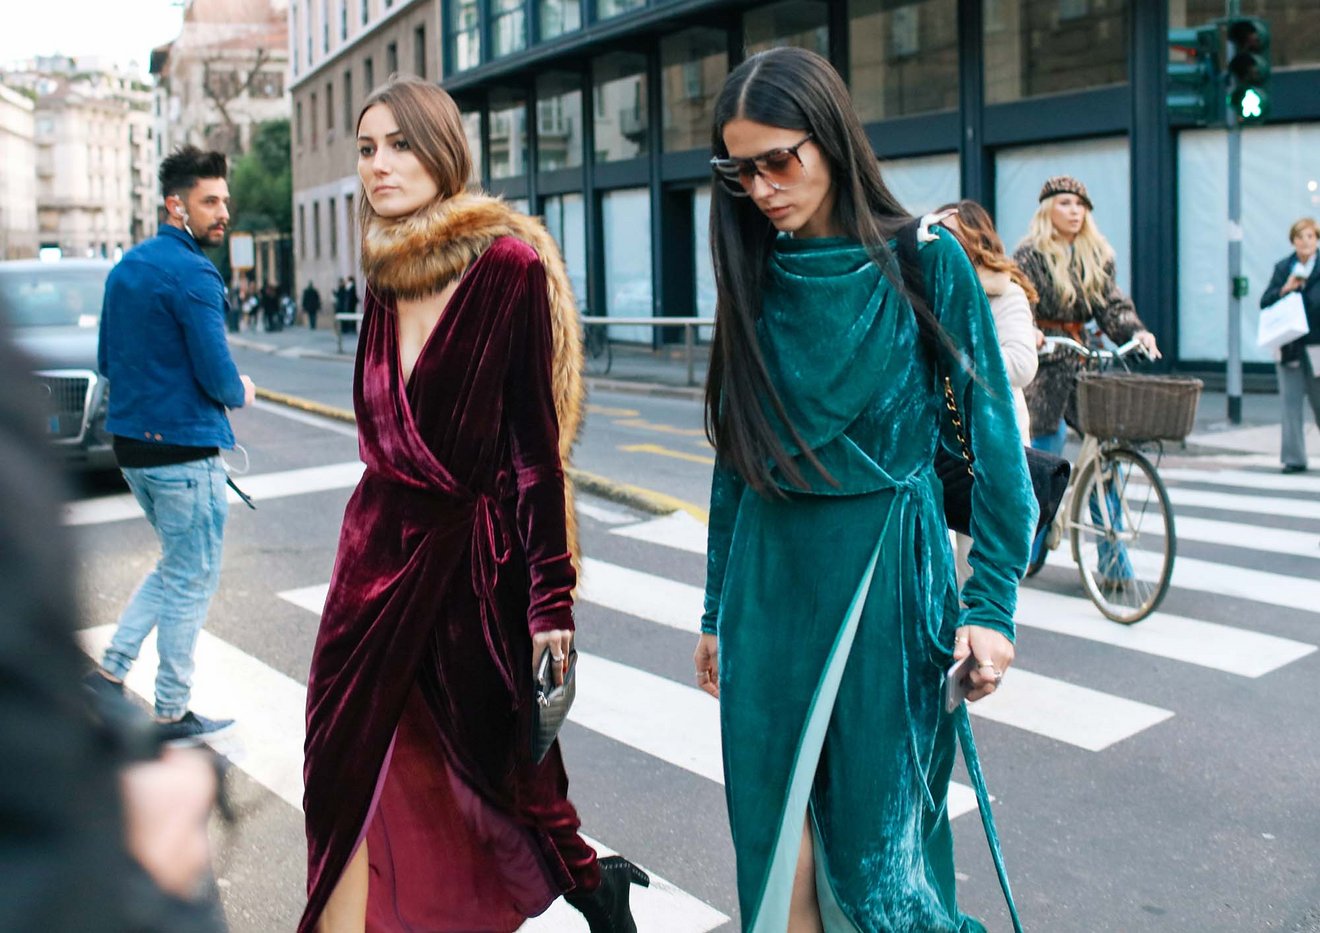 Two women modeling long velvet gowns and walking on the street. 